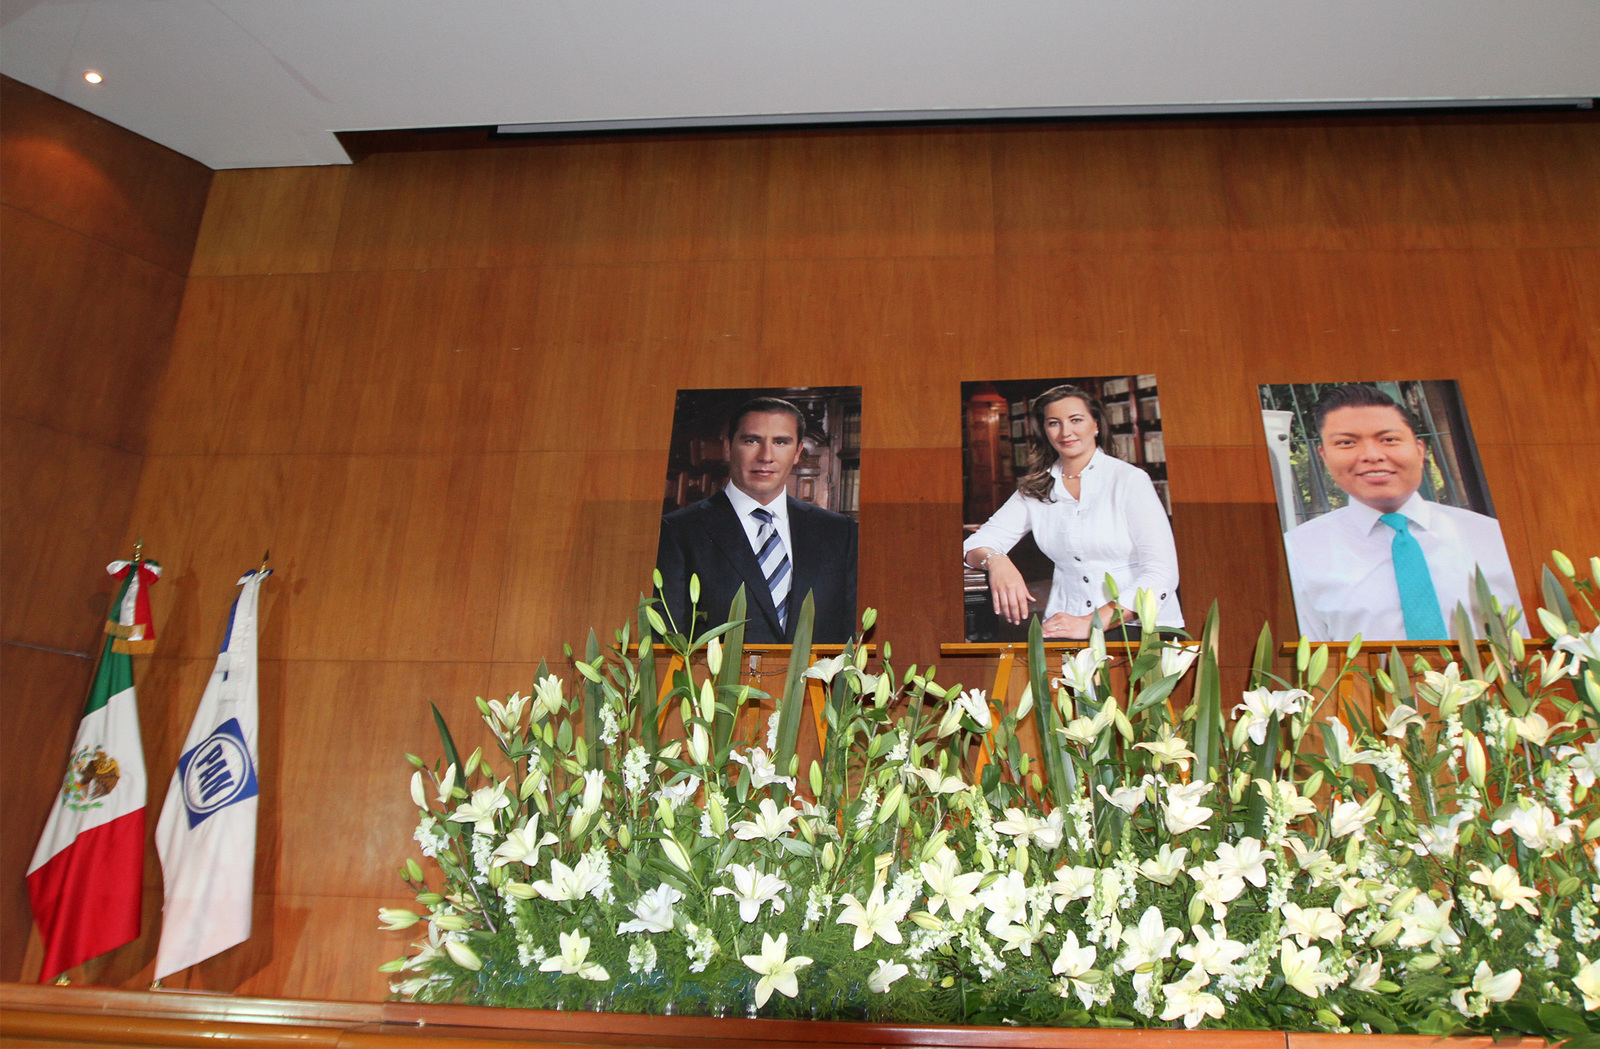 Accidente. La gobernadora de Puebla y su esposo murieron el pasado 24 de diciembre. (NOTIMEX)